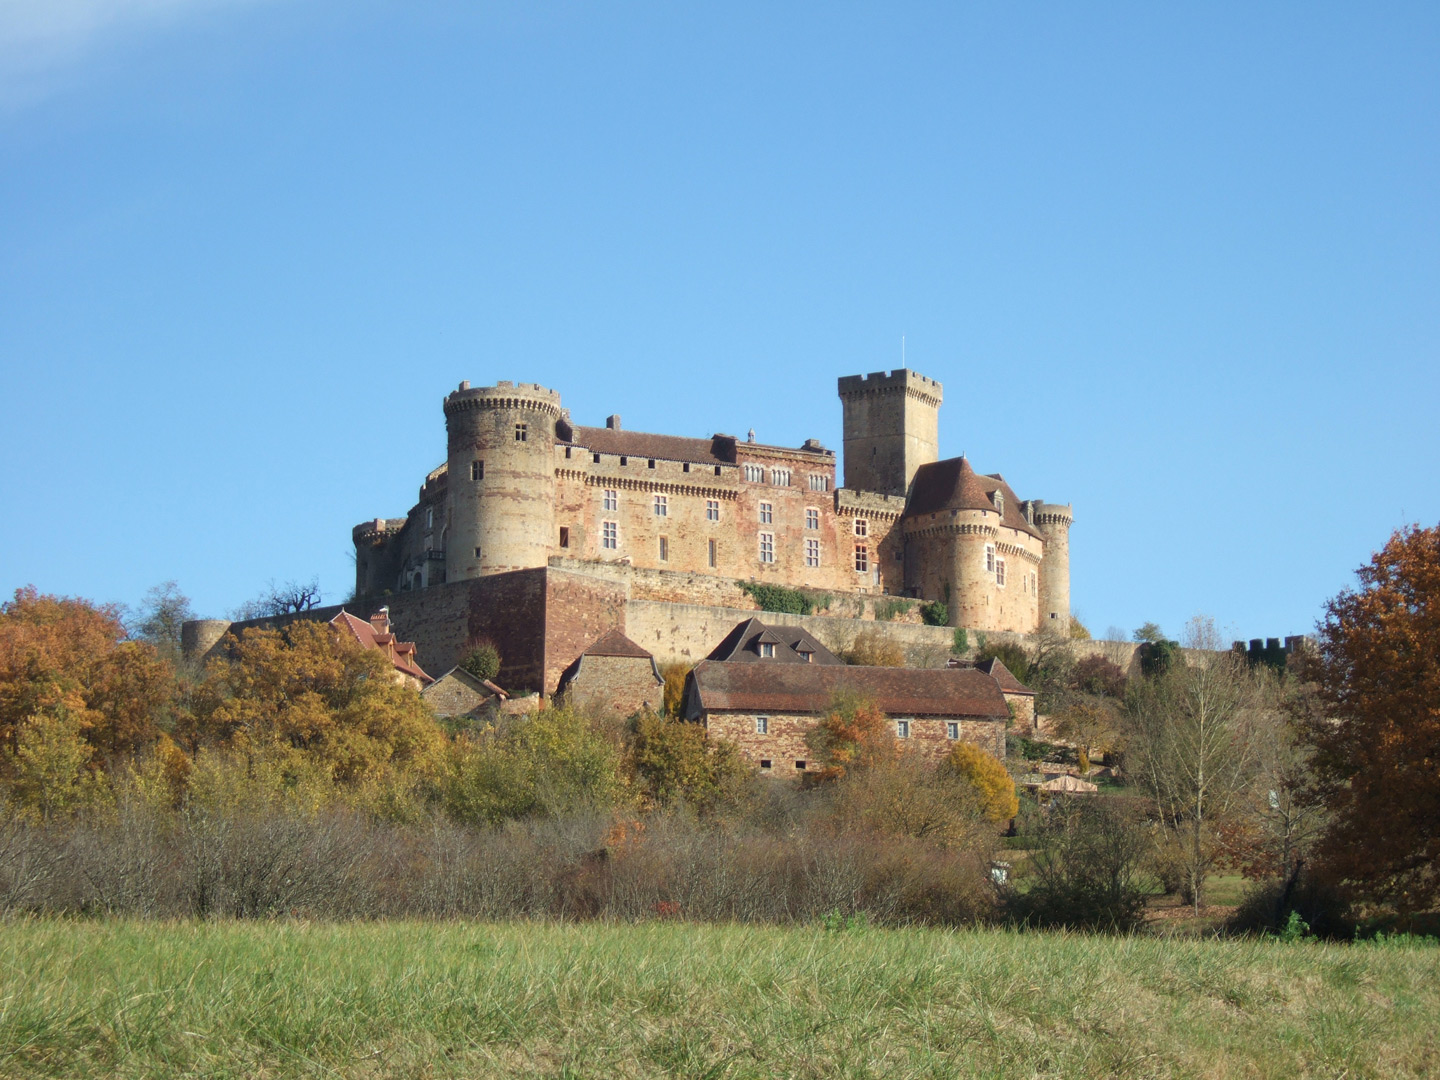 Lot, Le château de Castelnau